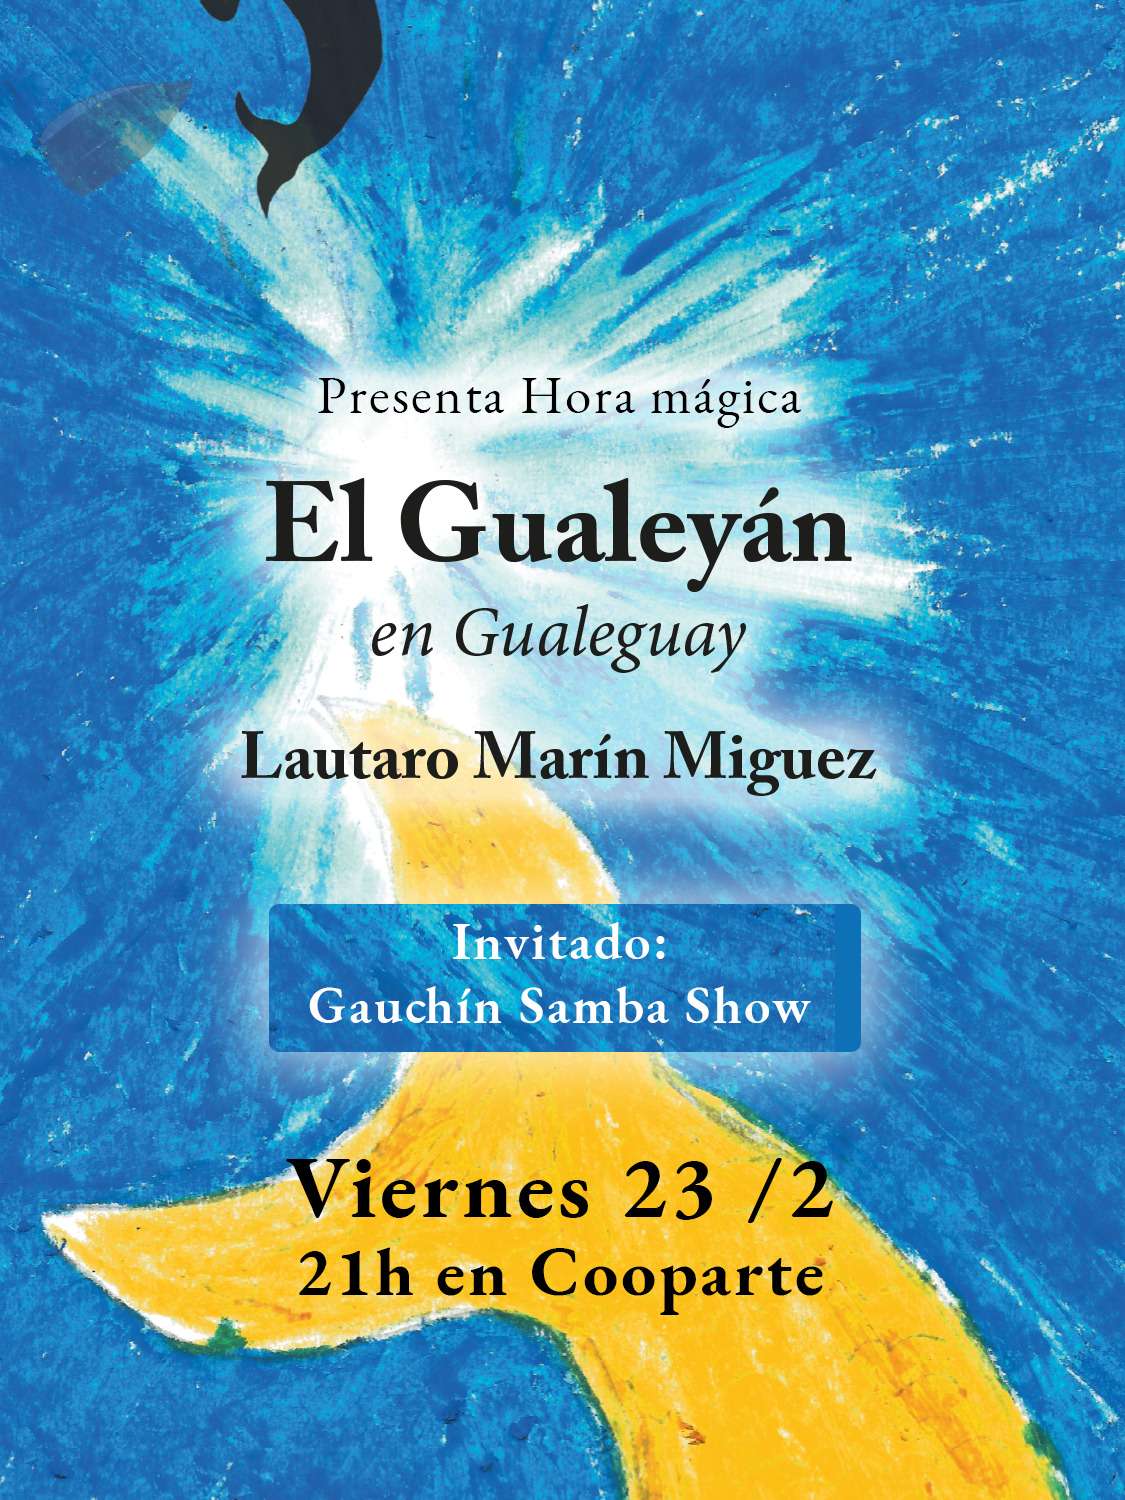 Se presenta "El Gualeyán" en Cooparte